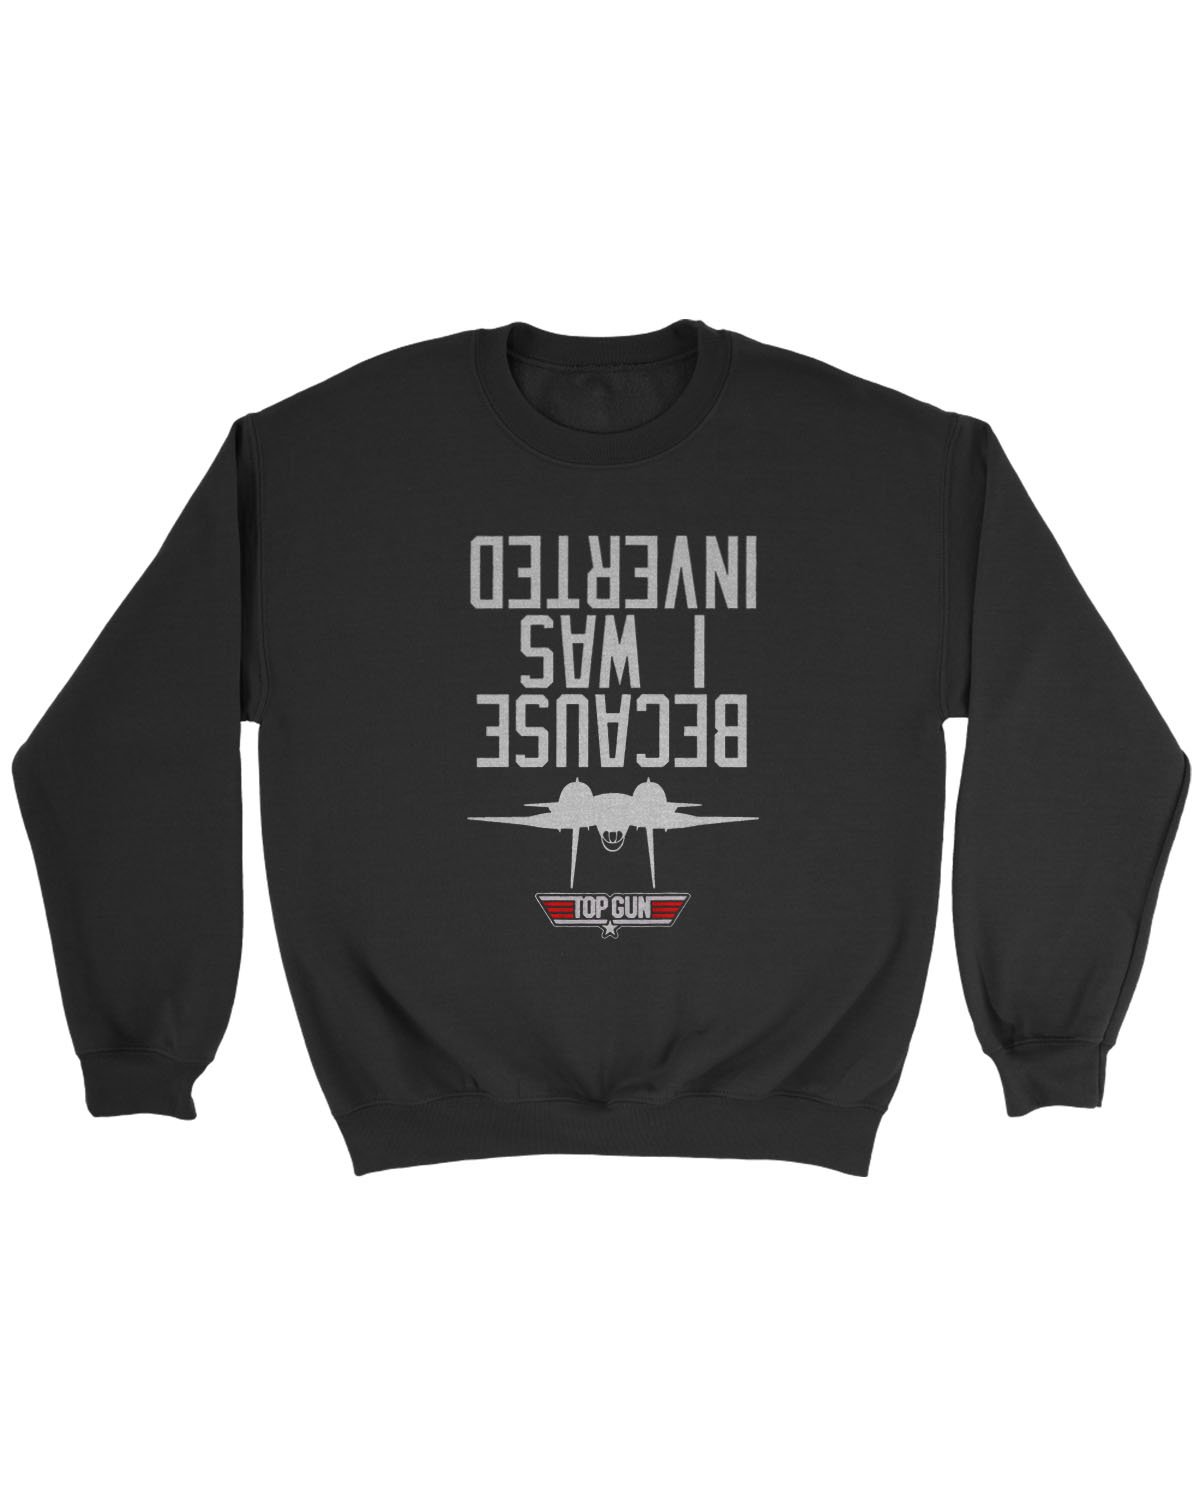 Top Gun Inverted Sweatshirt